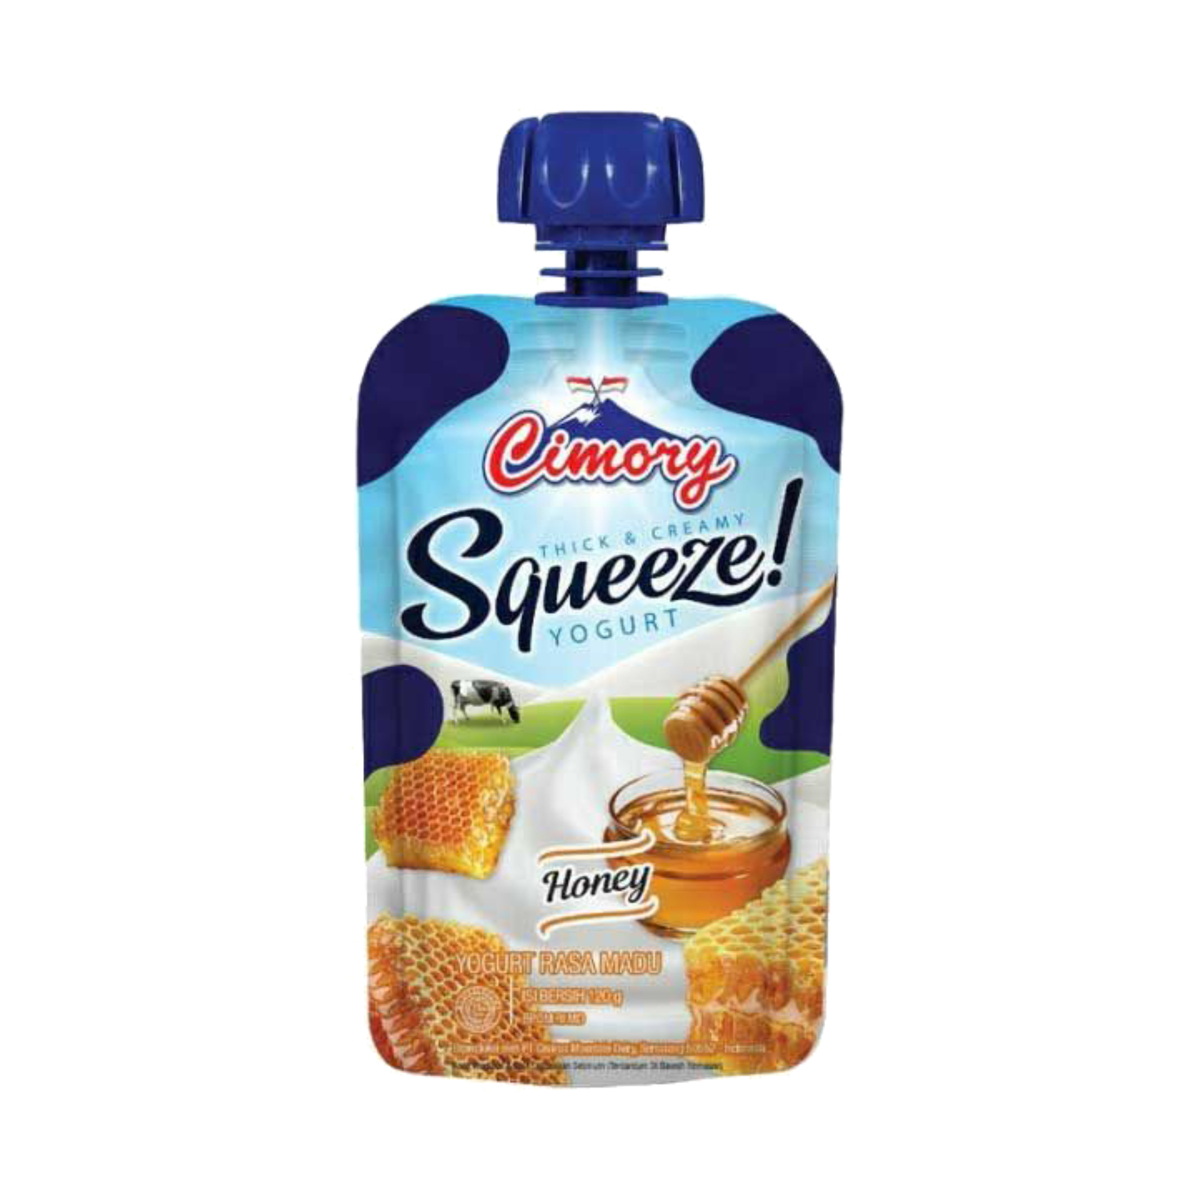 Cimory Yogurt Squeeze Honey 120ml